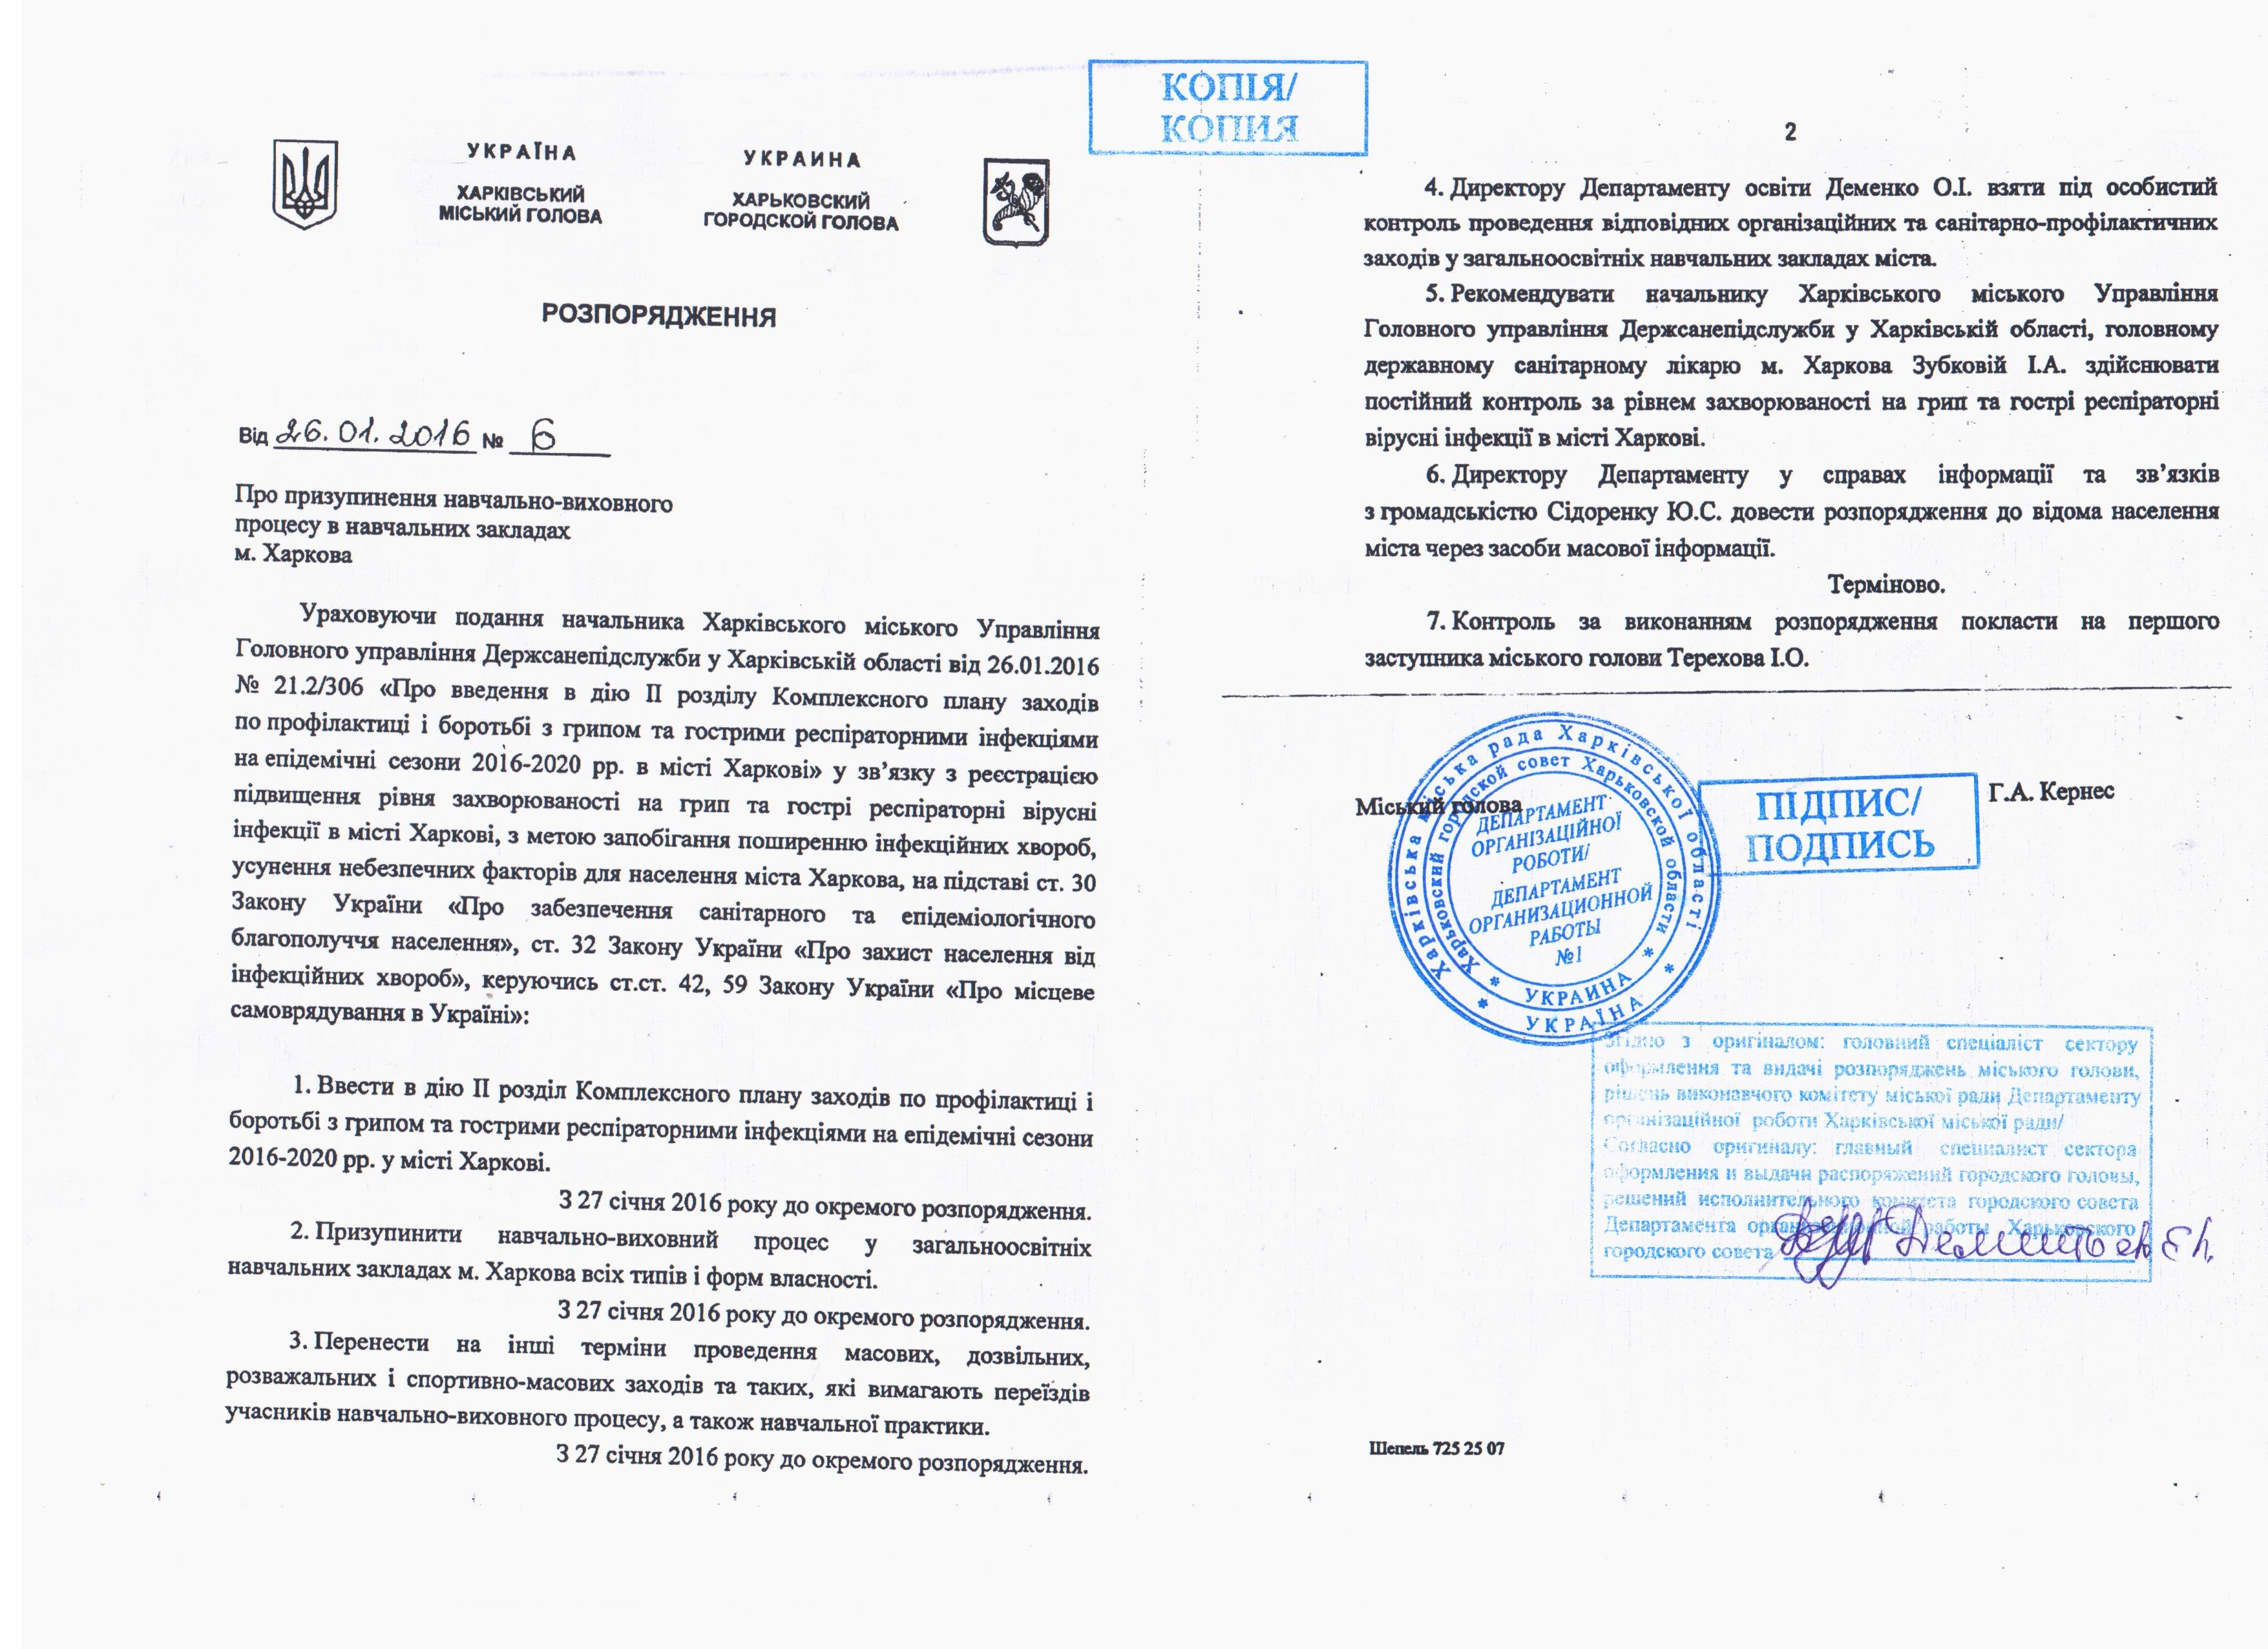 распоряжение №6 от 26 января 2016 года подписал Харьковский городской голова Геннадий Кернес